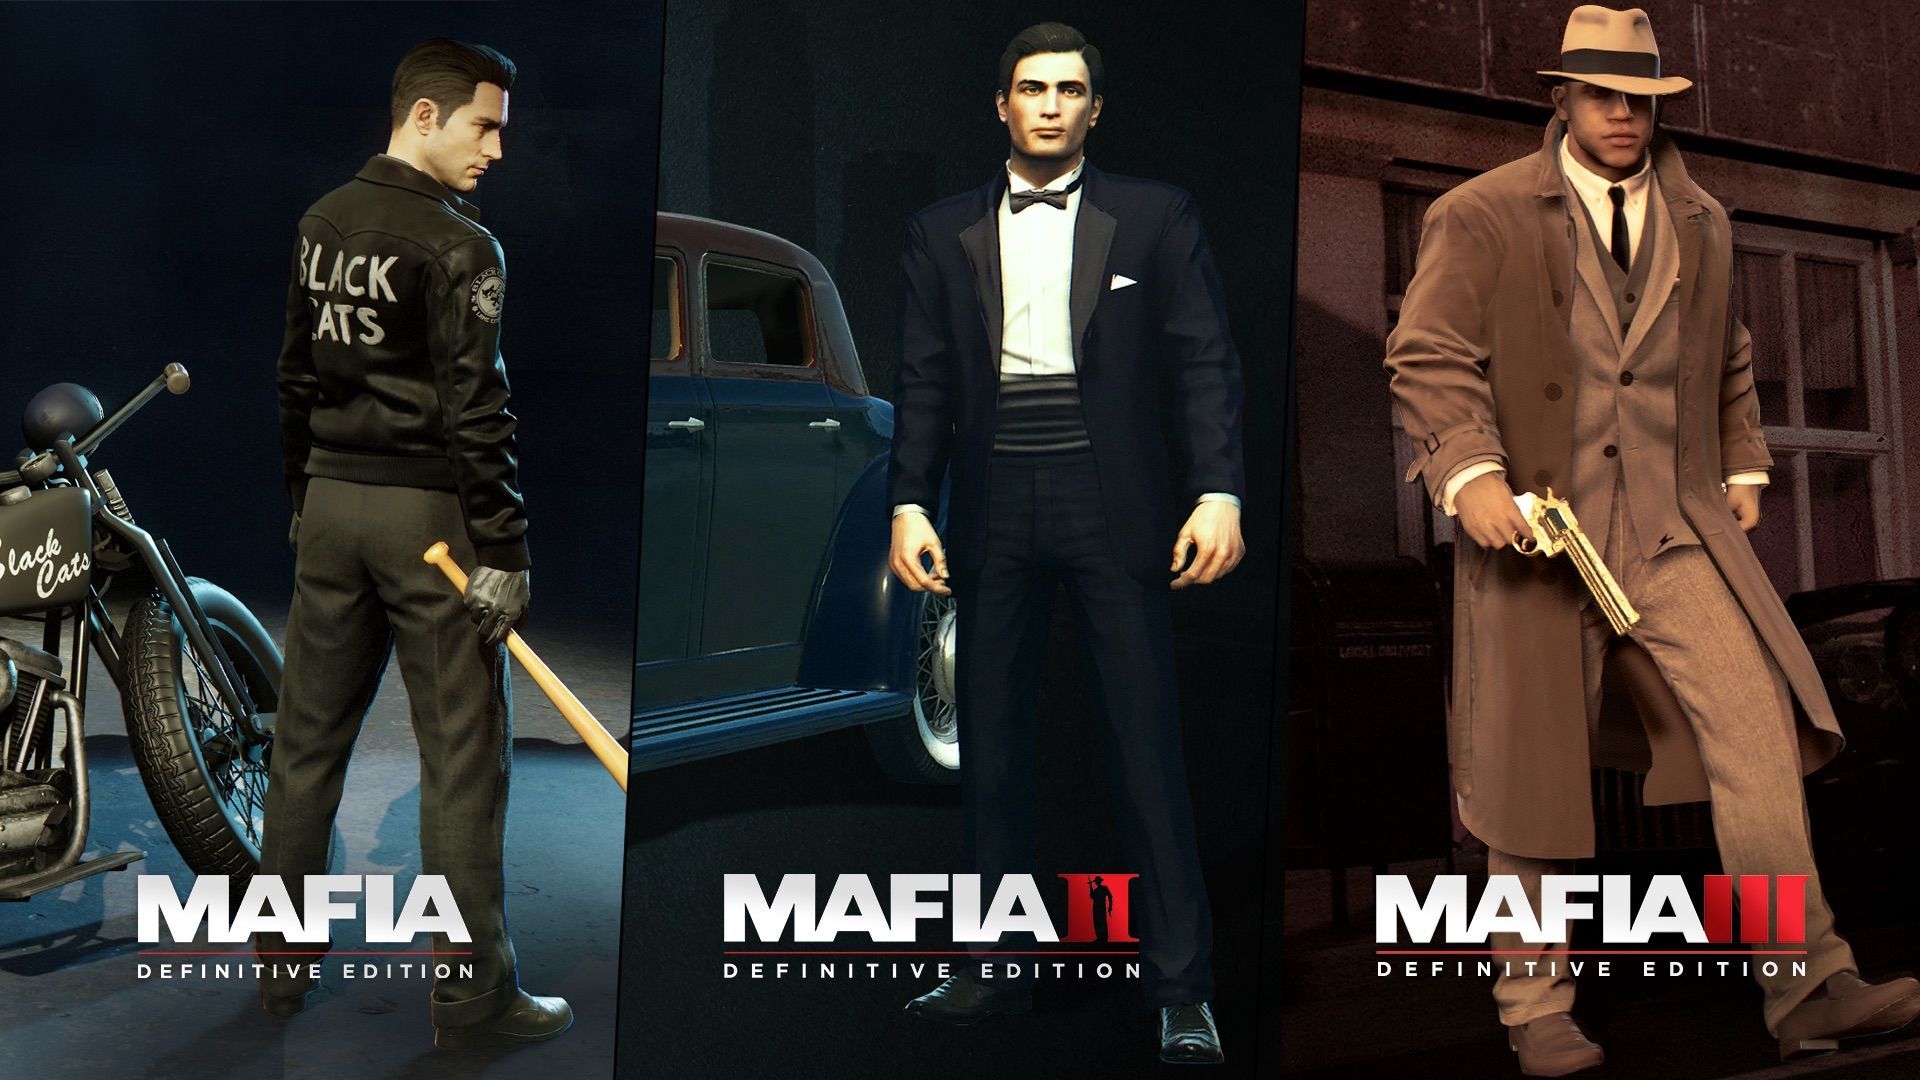 Mafia Definitive Edition Wallpaper Free Mafia Definitive Edition Background